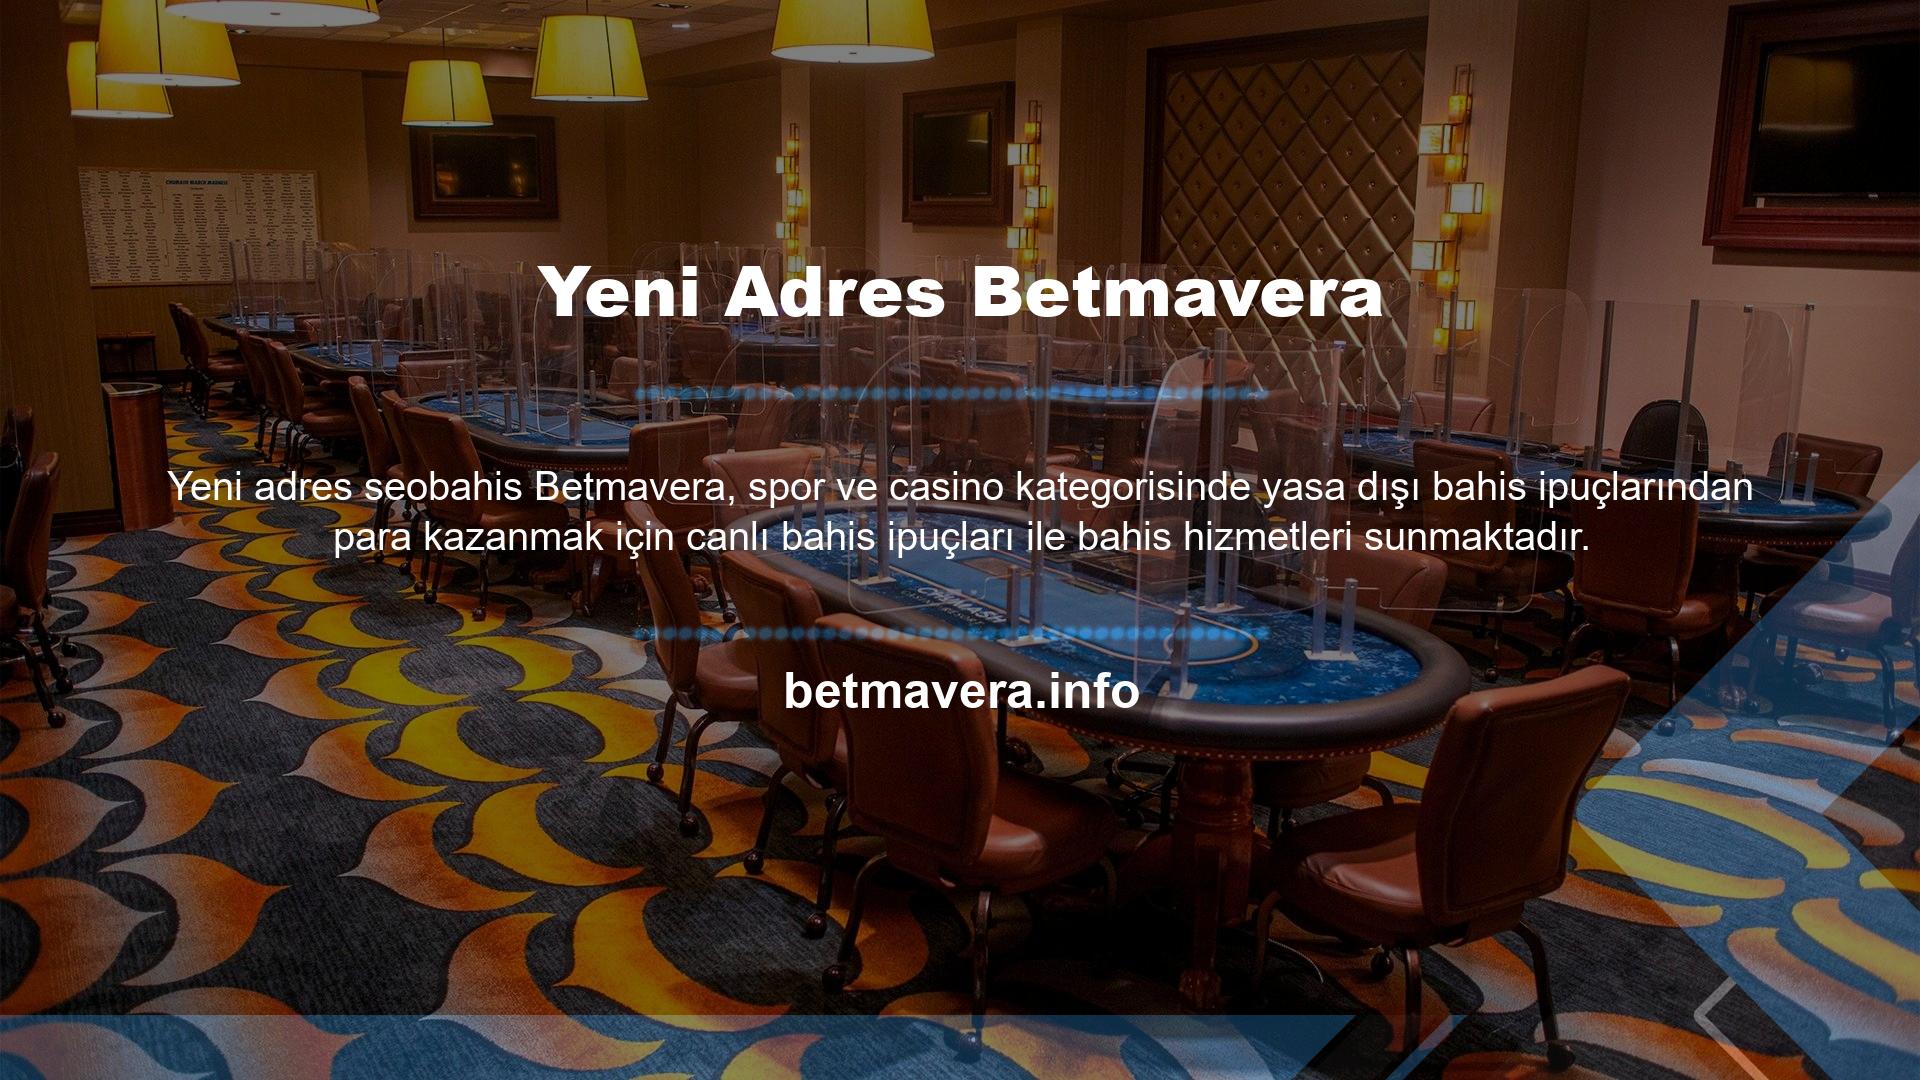 Betmavera yeni adresi ile birlikte spor, canlı spor ve casino kategorilerinde bahis seçenekleri ile bahis piyasasında faydalı içerikler sunmaktadır